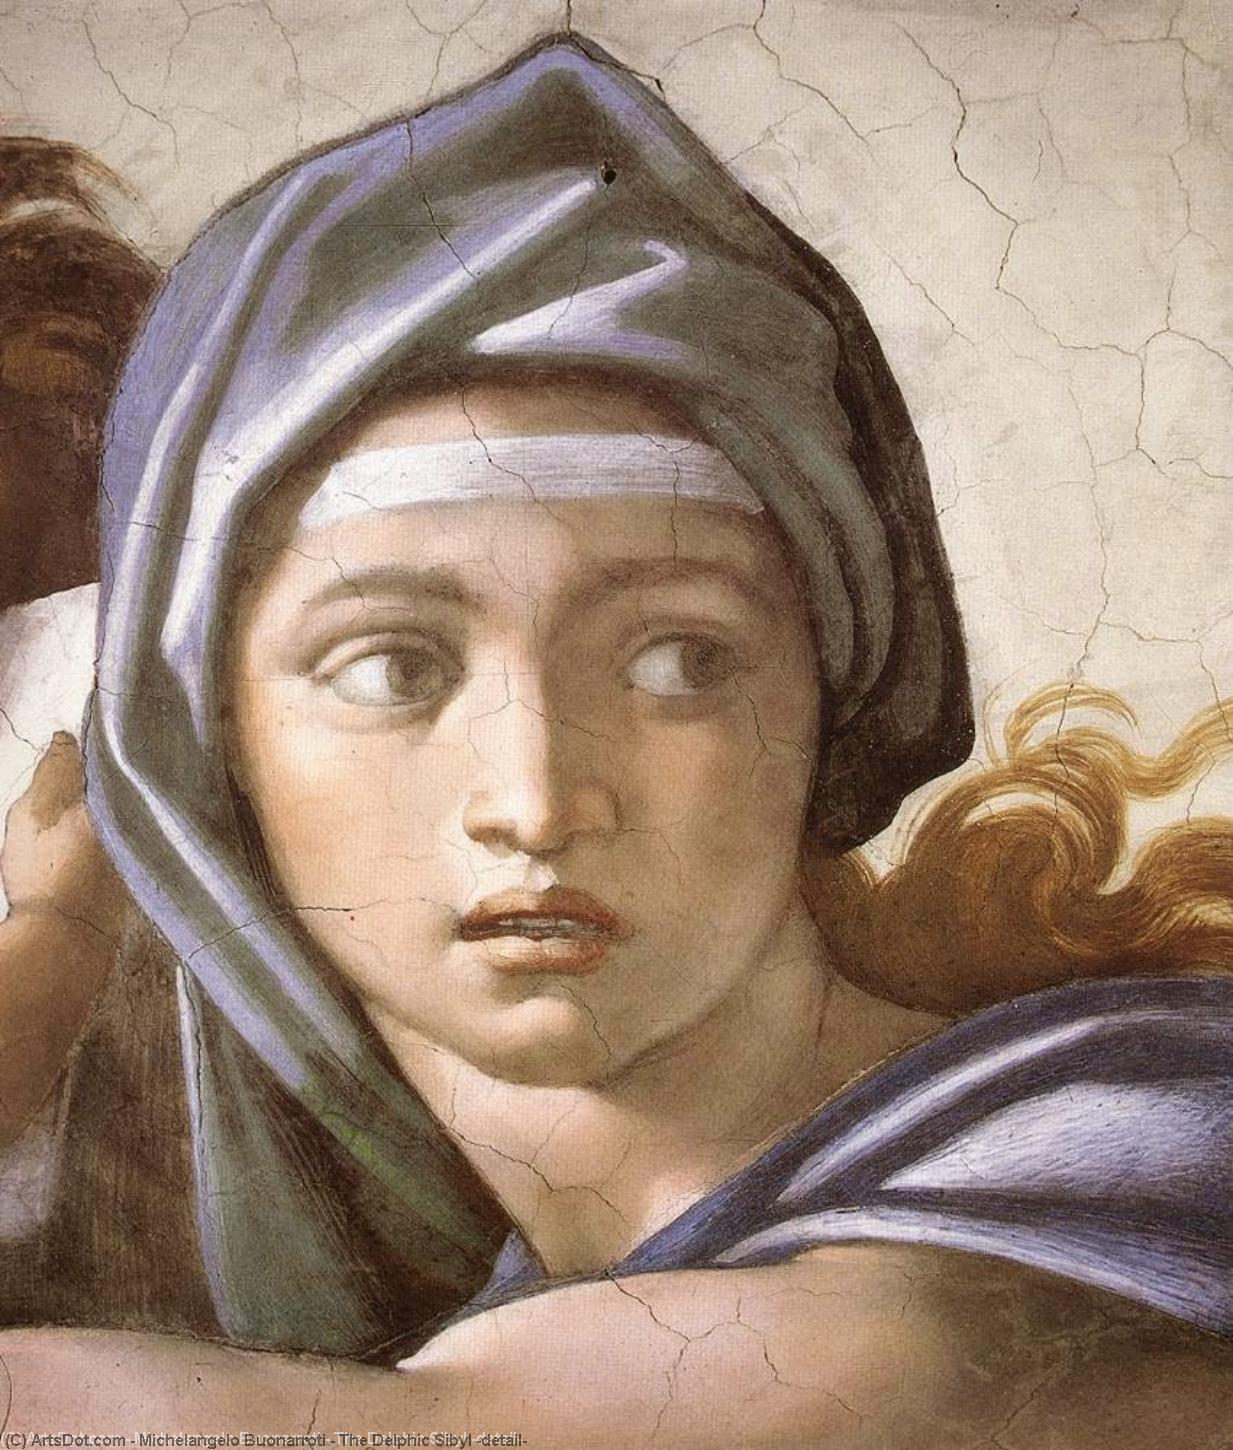 WikiOO.org - Encyclopedia of Fine Arts - Lukisan, Artwork Michelangelo Buonarroti - The Delphic Sibyl (detail)